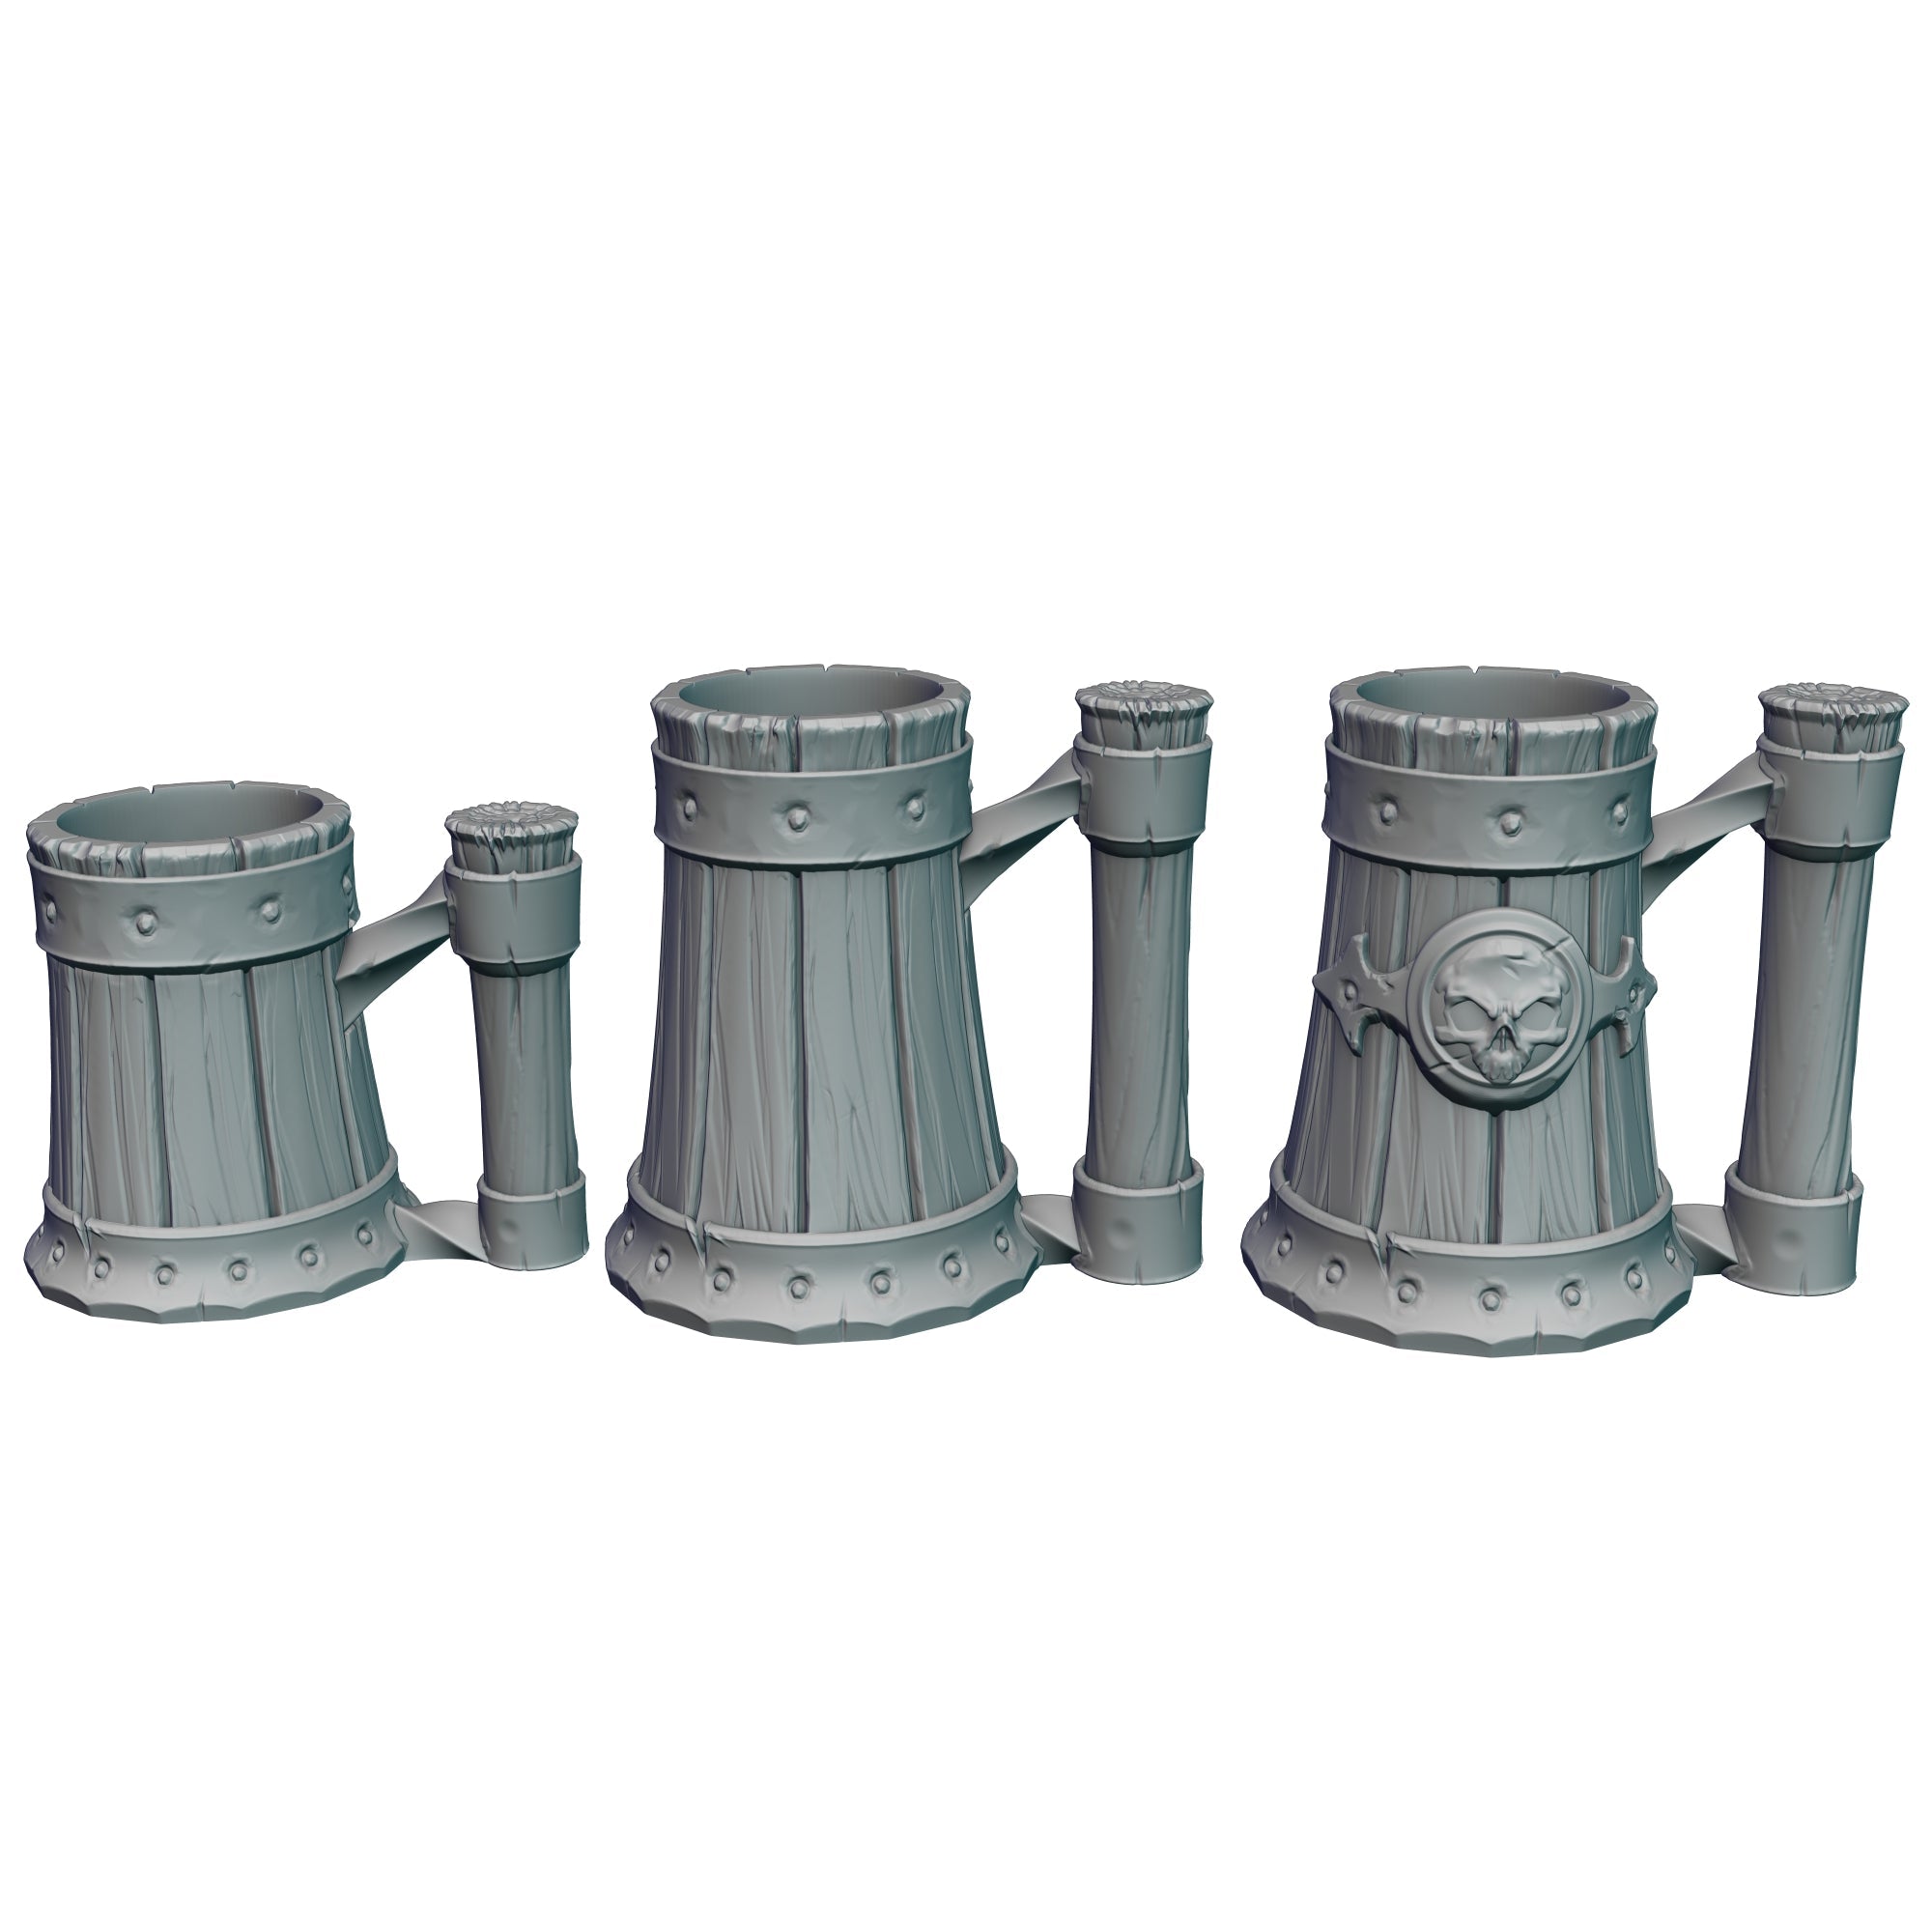 Tavern Mug 3 (Tall No Emblem Version)